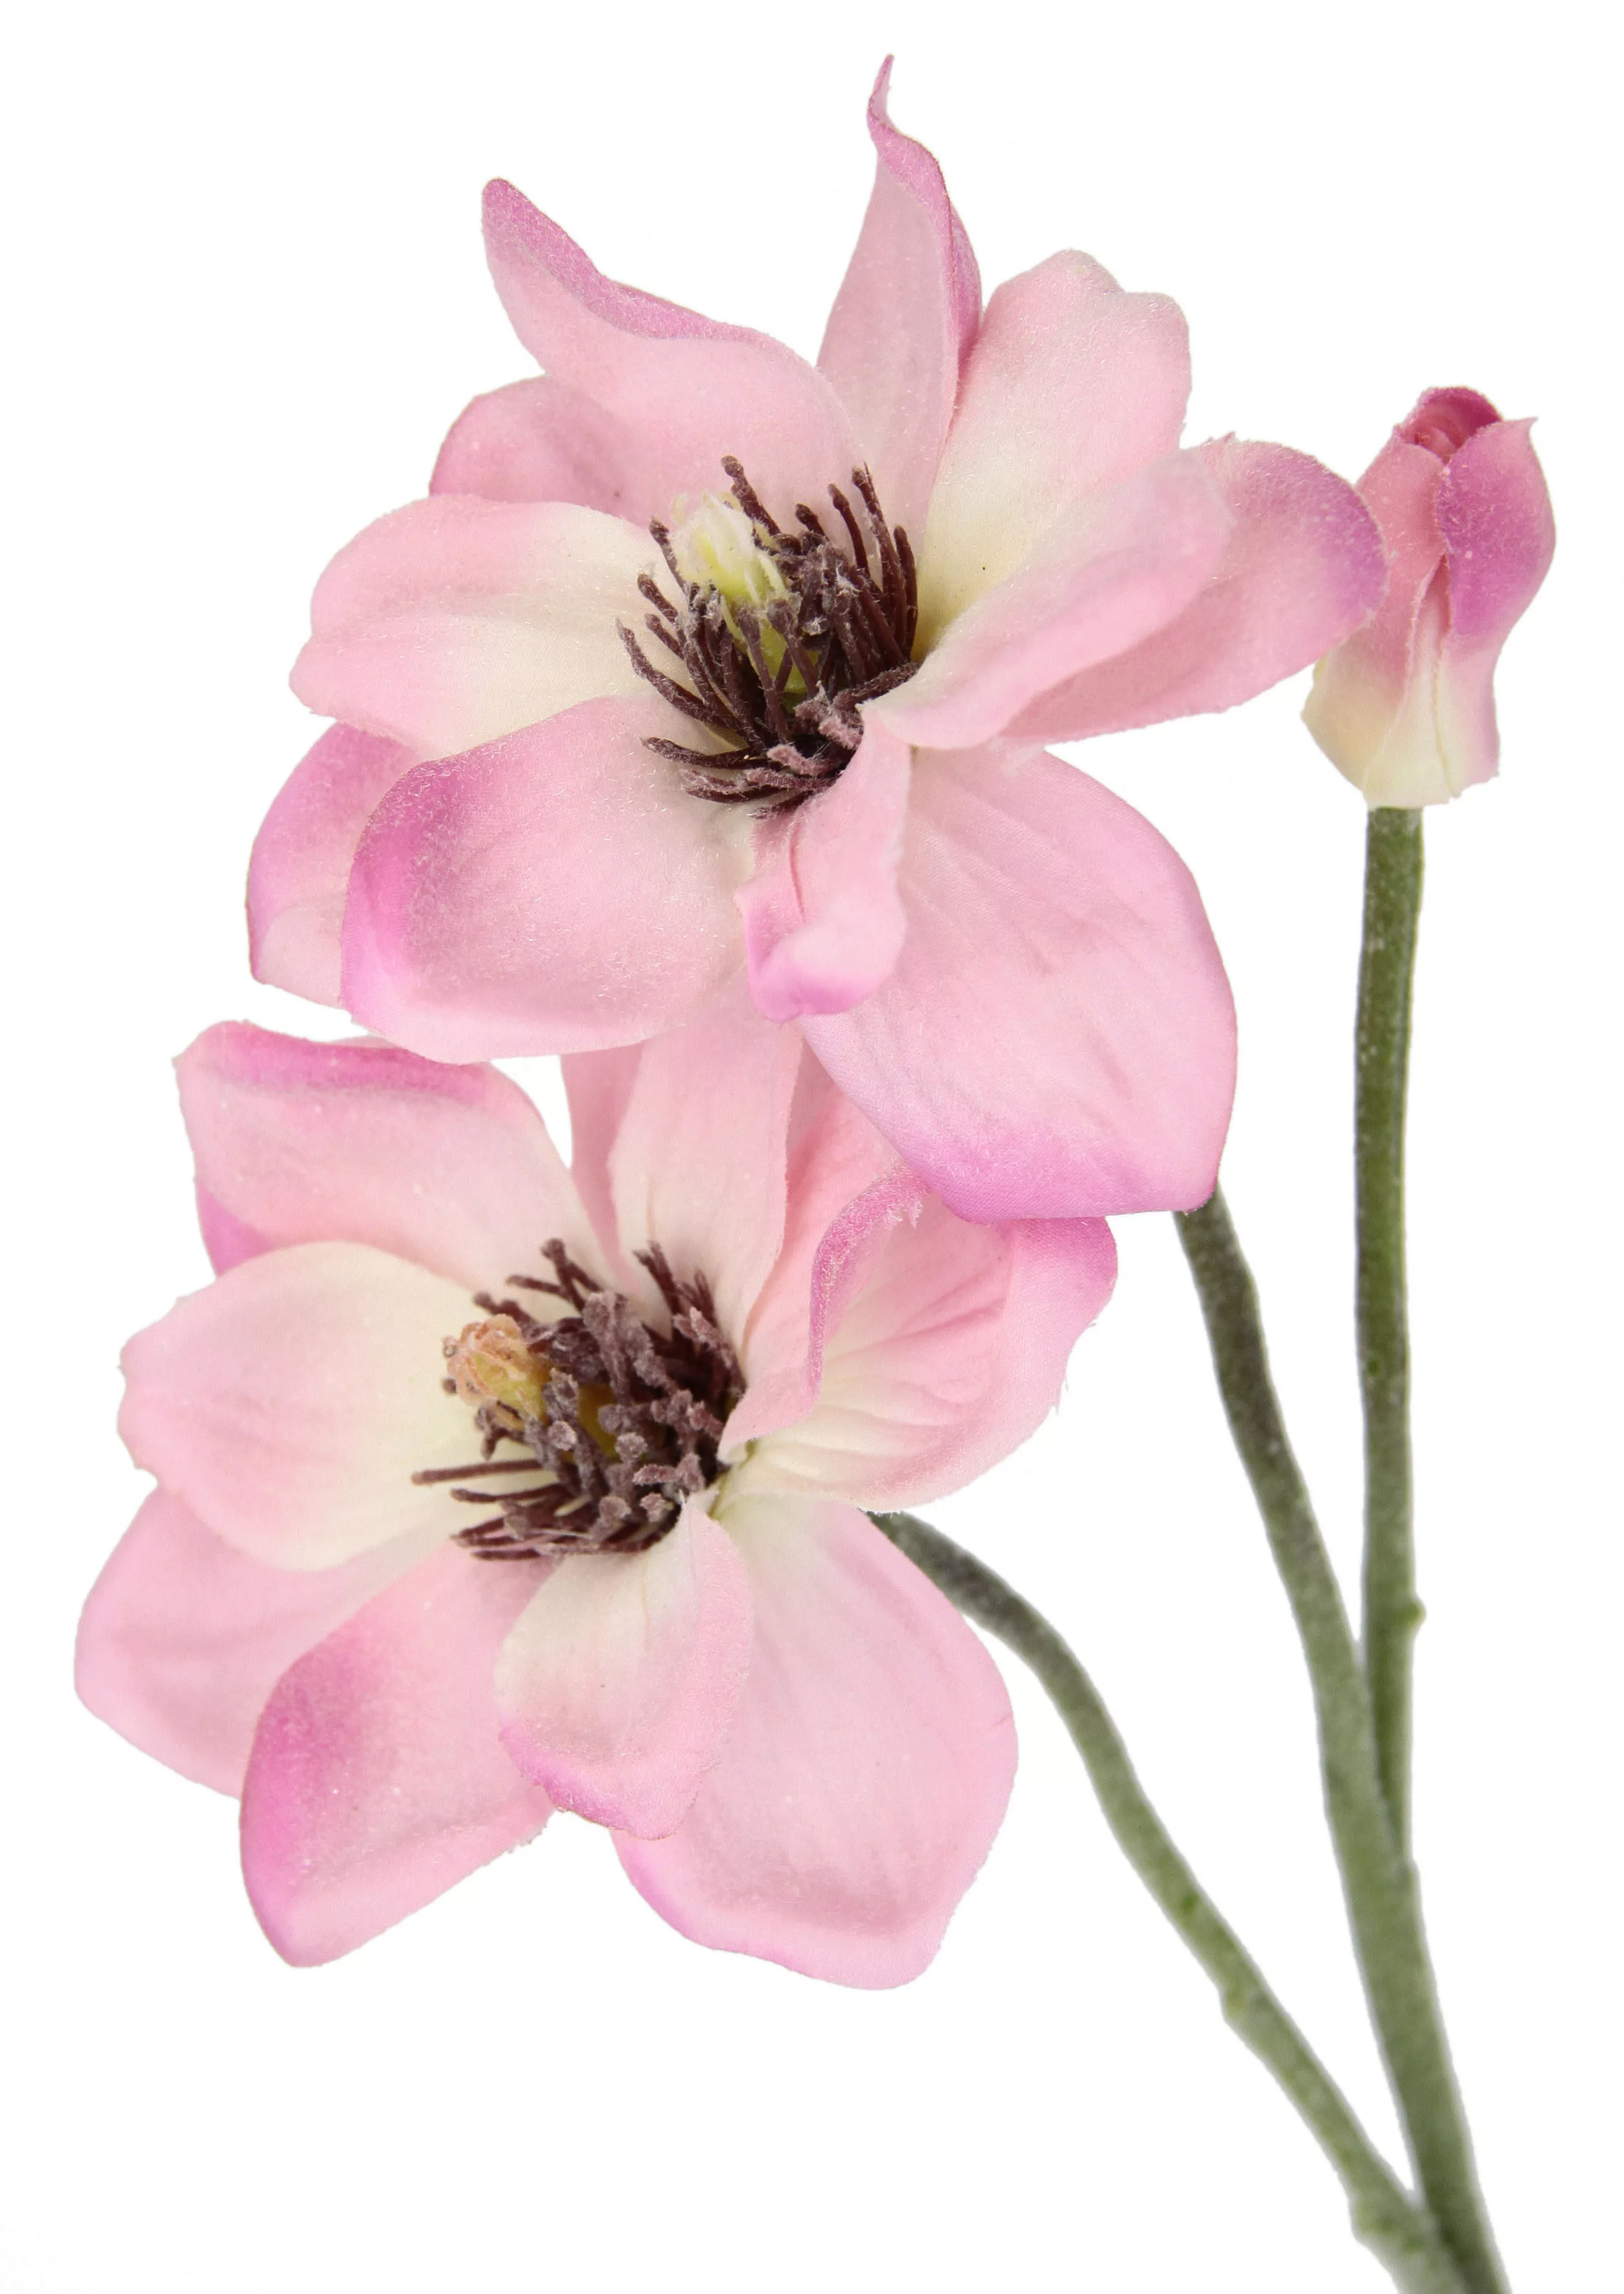 I.GE.A. Kunstblume "Magnolie", Künstlicher Magnolienzweig, 3er Set günstig online kaufen